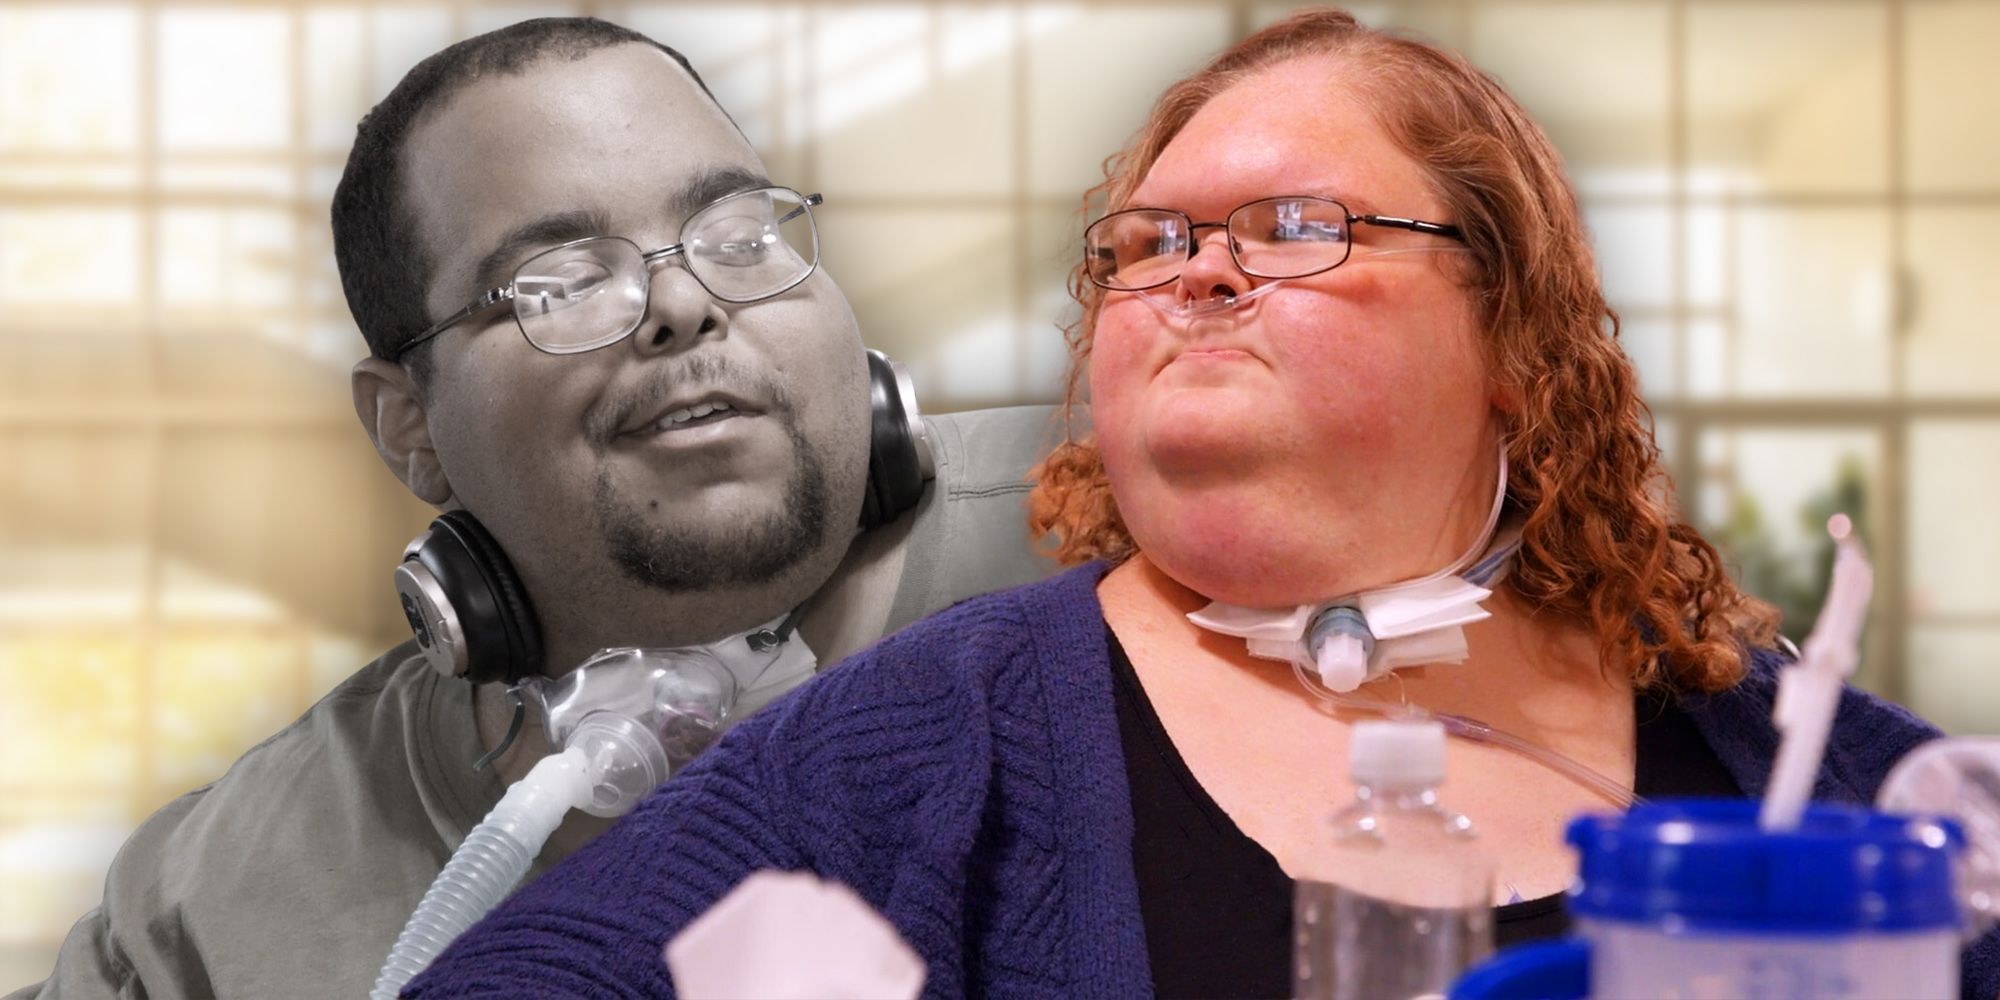 La estrella de 1000-Lb Sisters, Tammy Slaton, se siente paralizada después de recibir una noticia inquietante